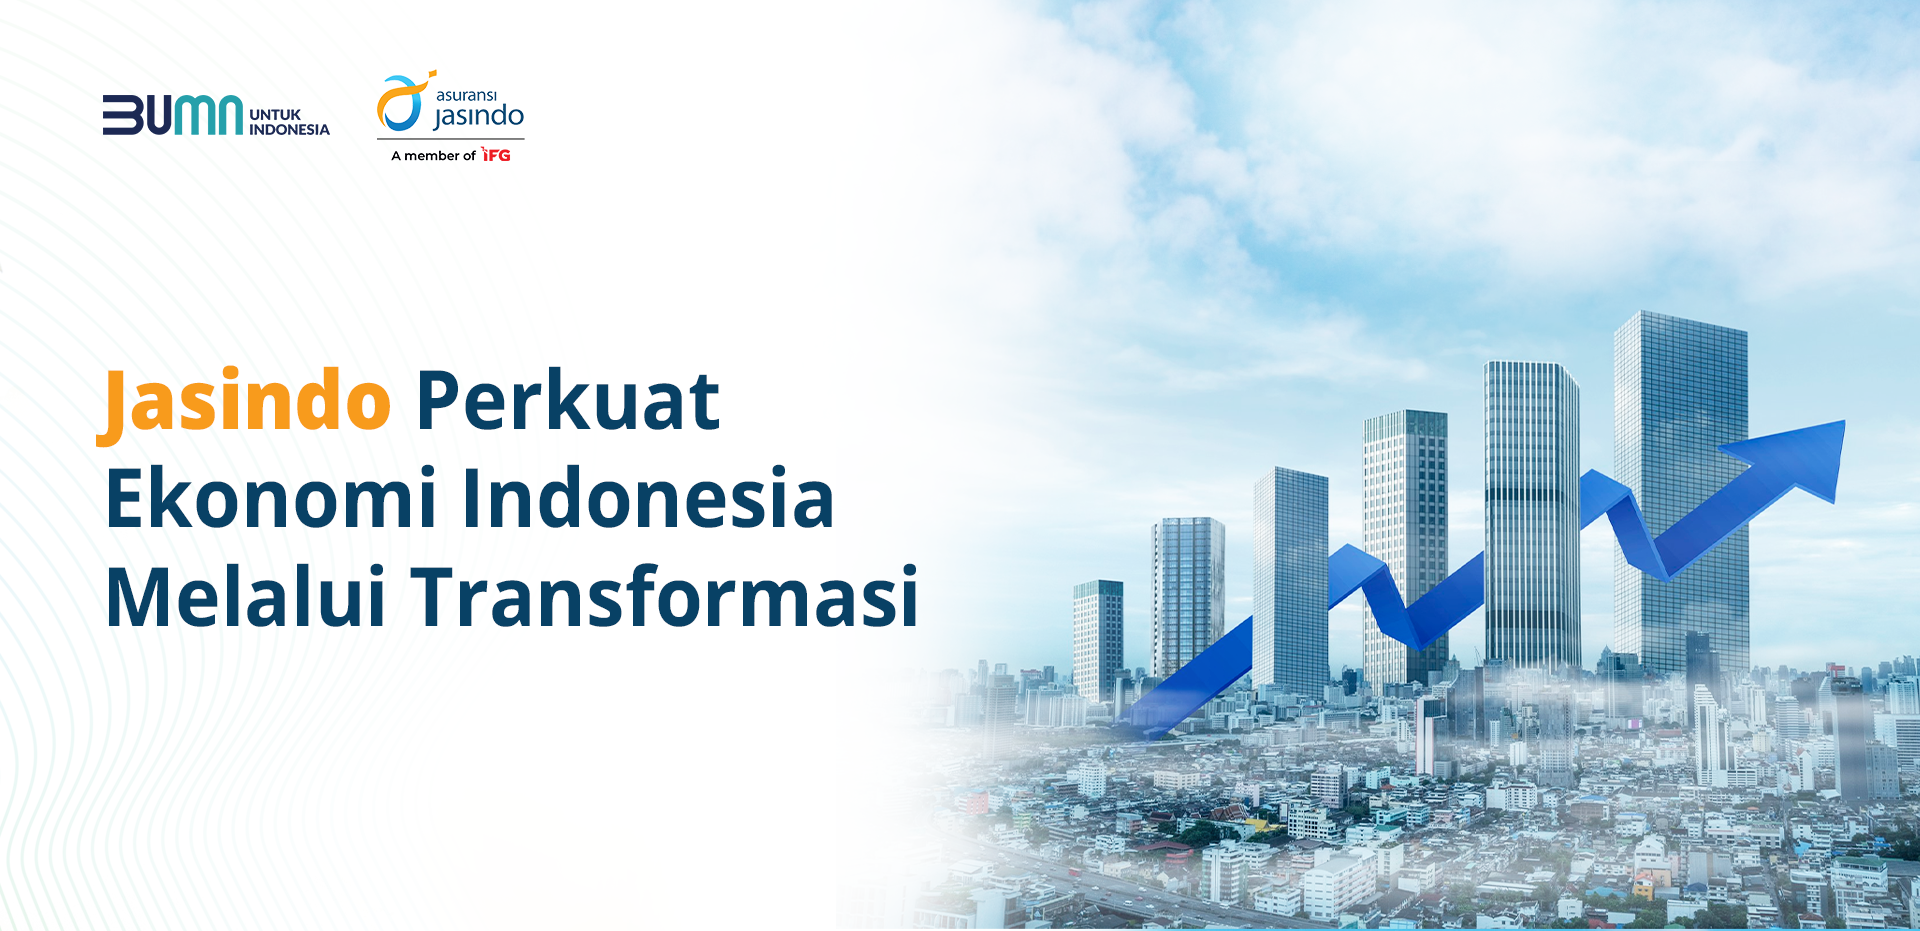 Jasindo Perkuat Ekonomi Indonesia Melalui Transformasi